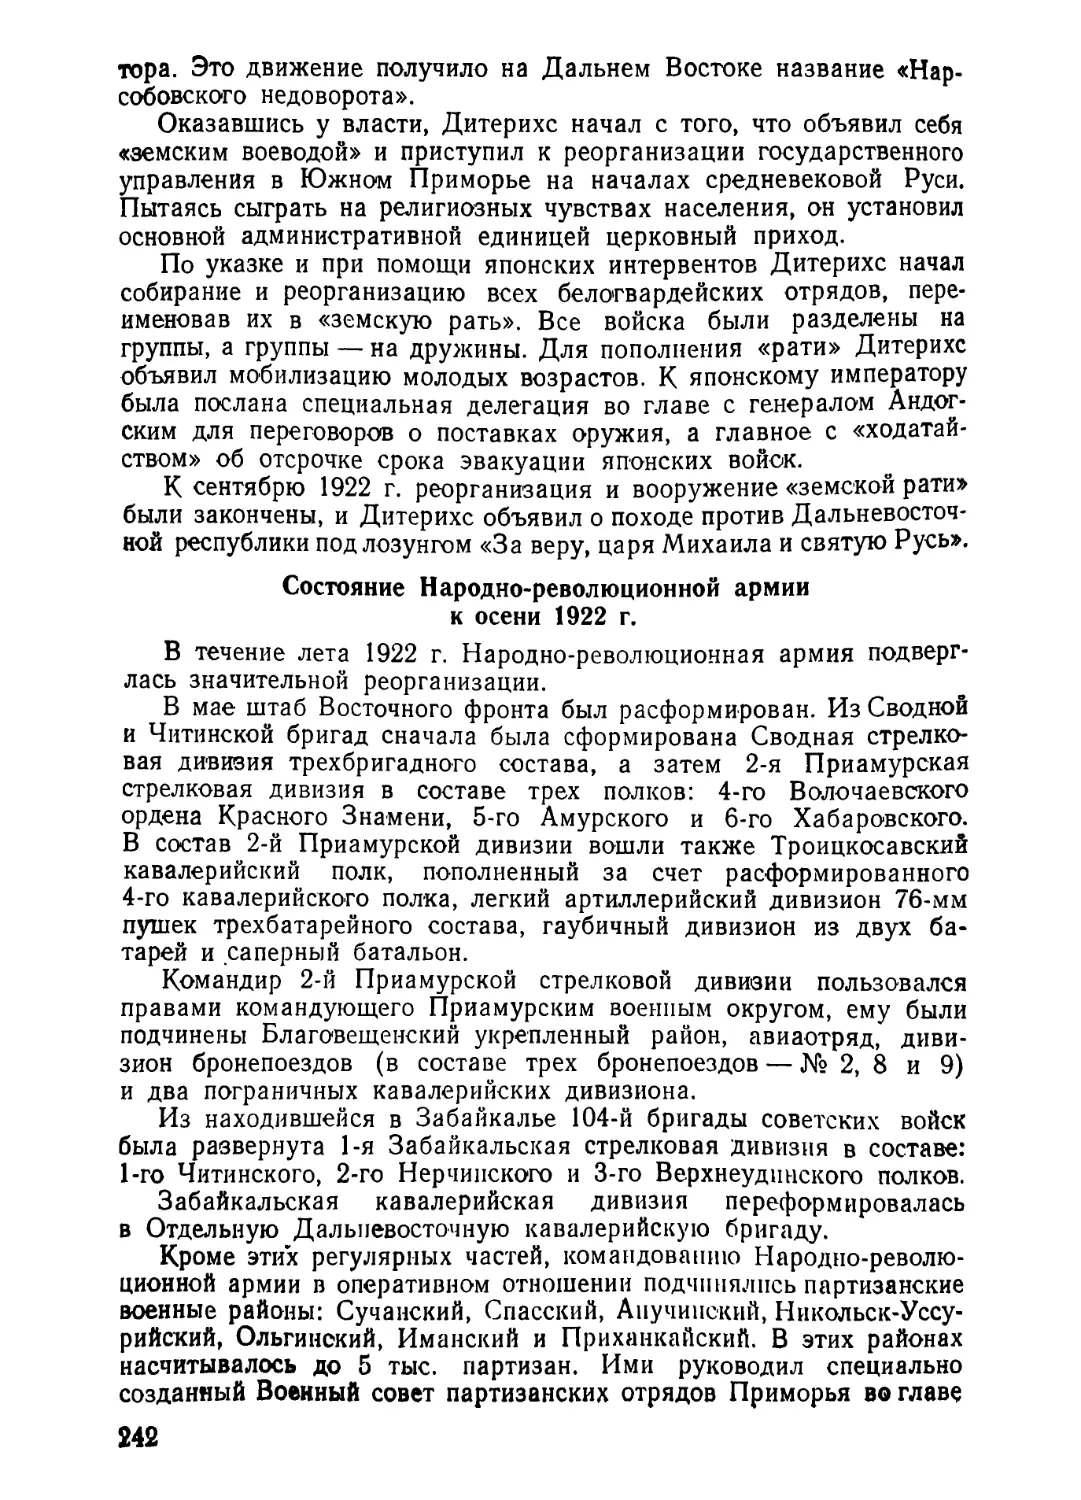 Состояние Народно-революцпонпой армии к осени 1922 г.